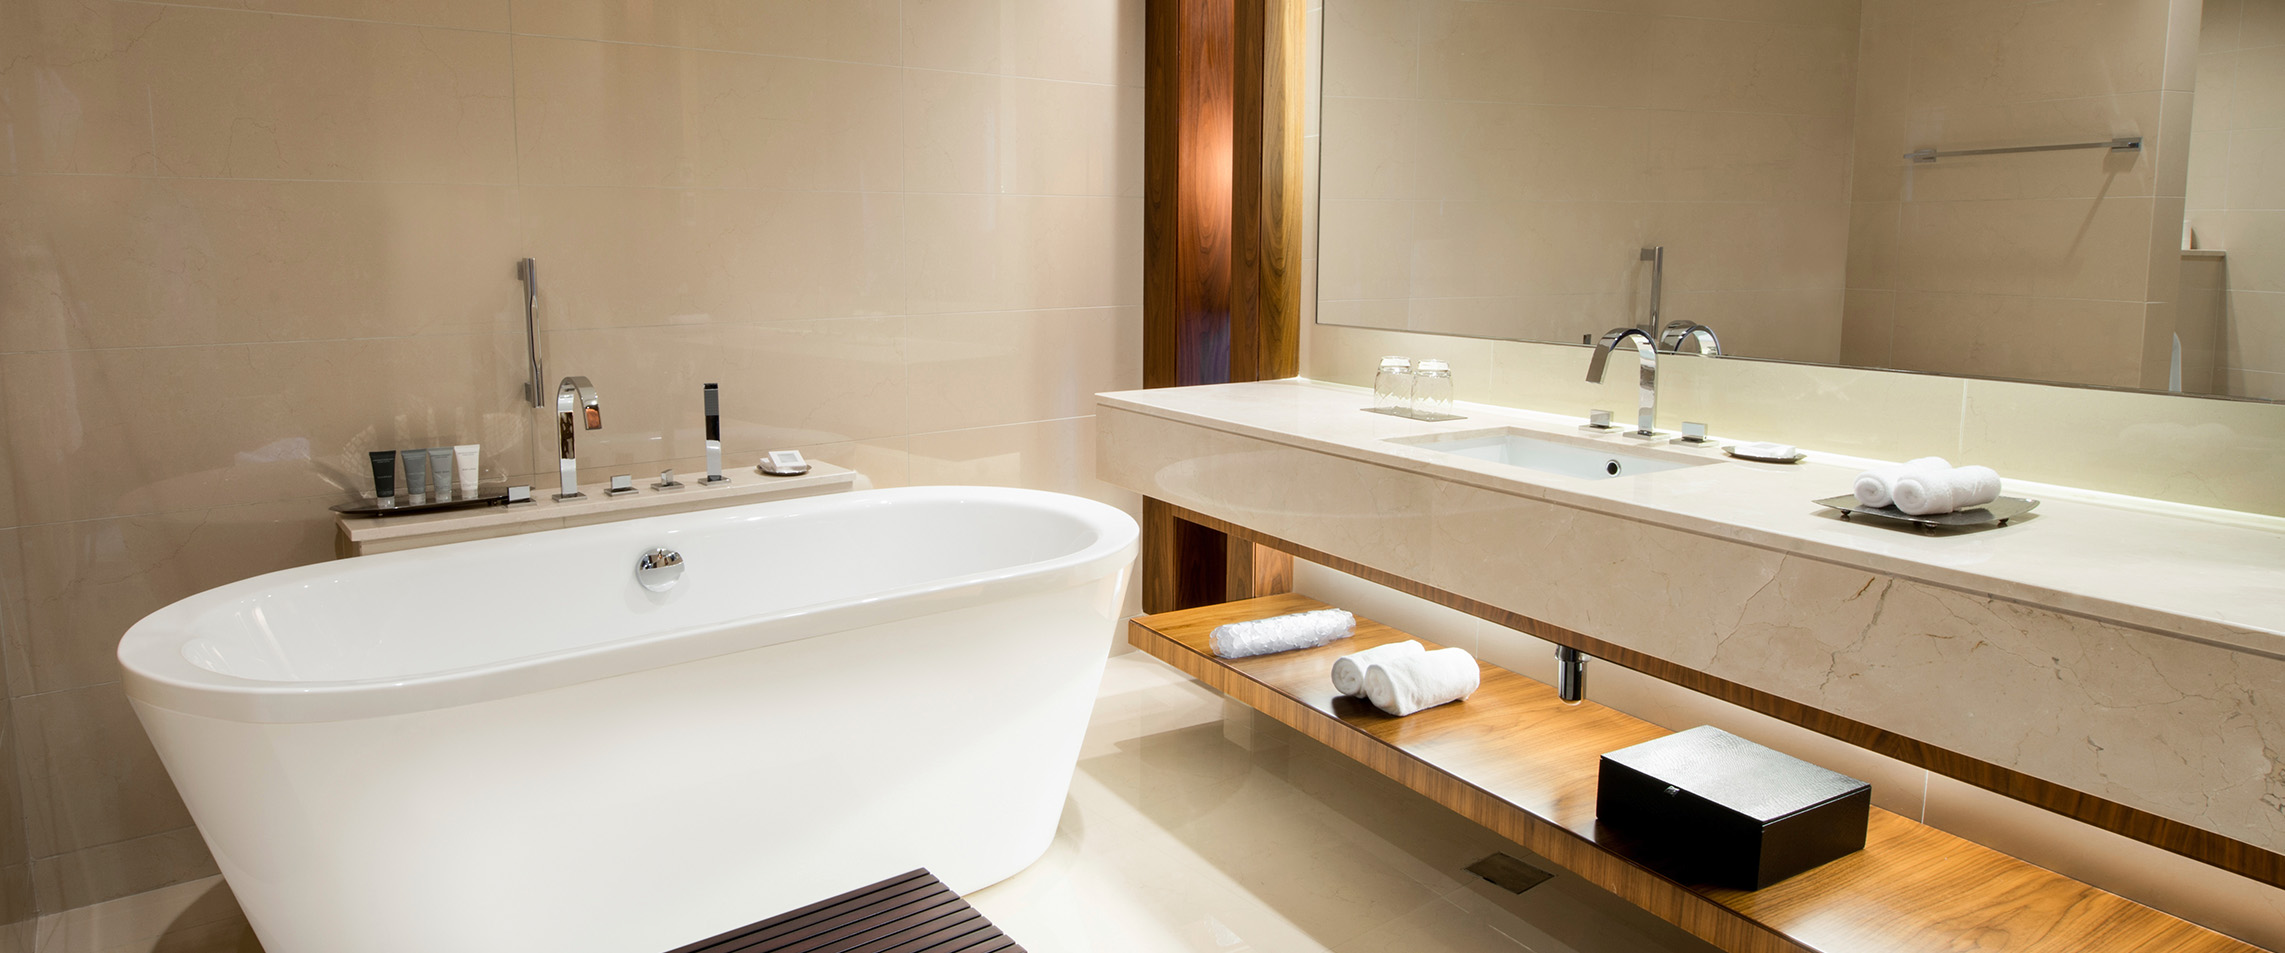 Premium Badezimmer mit Badewanne und Spiegel